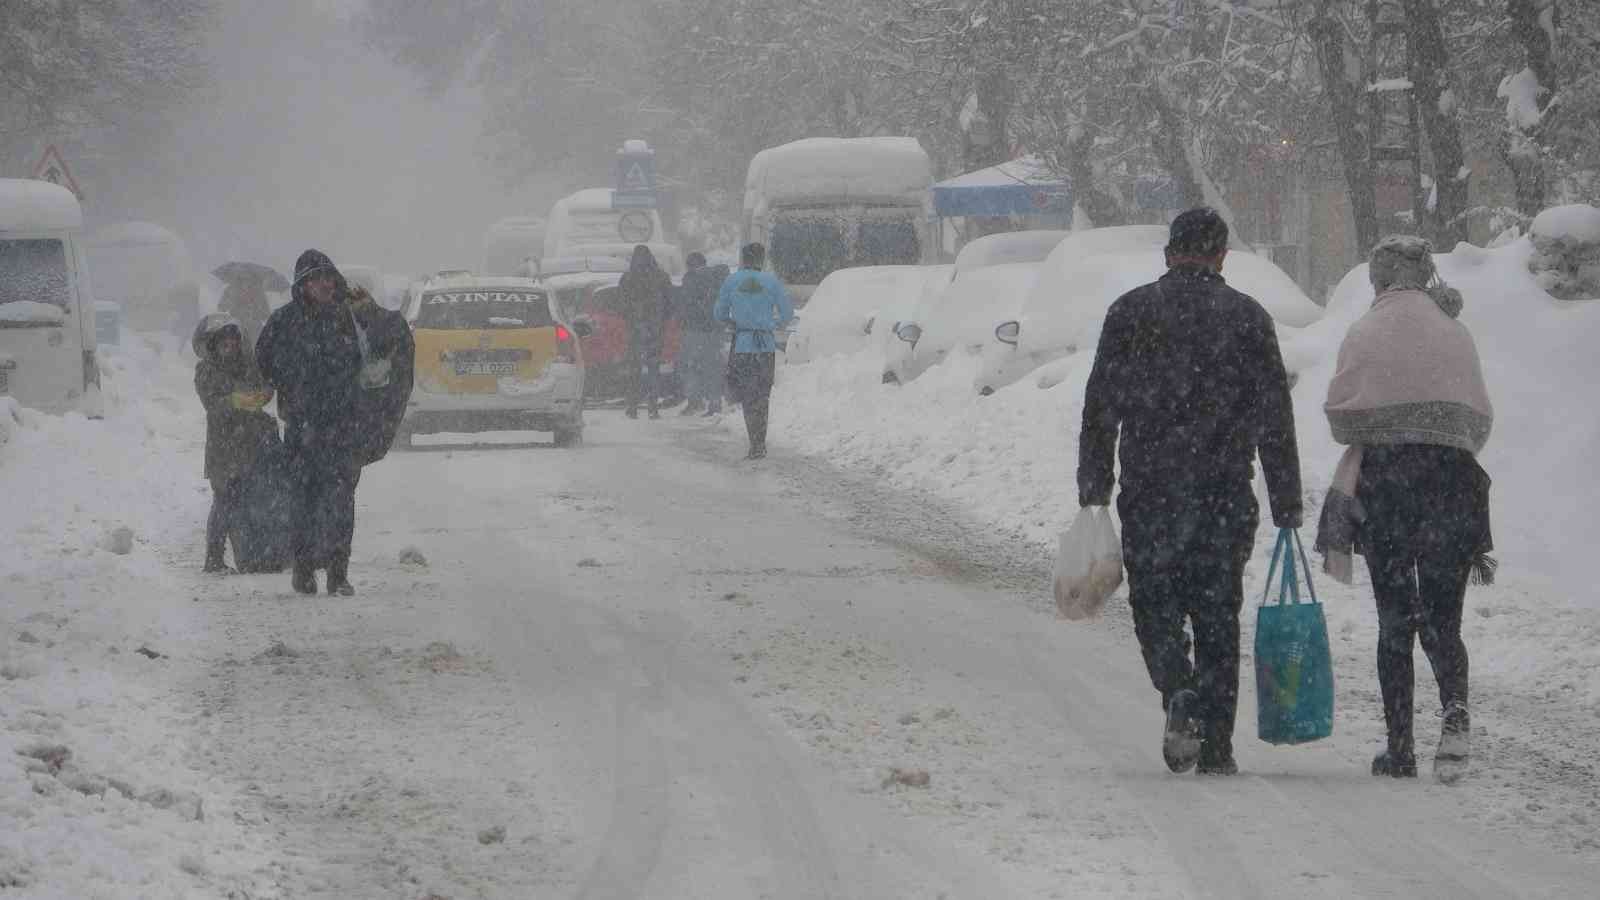 Gaziantep’te yoğun kar yağışı başladı #gaziantep